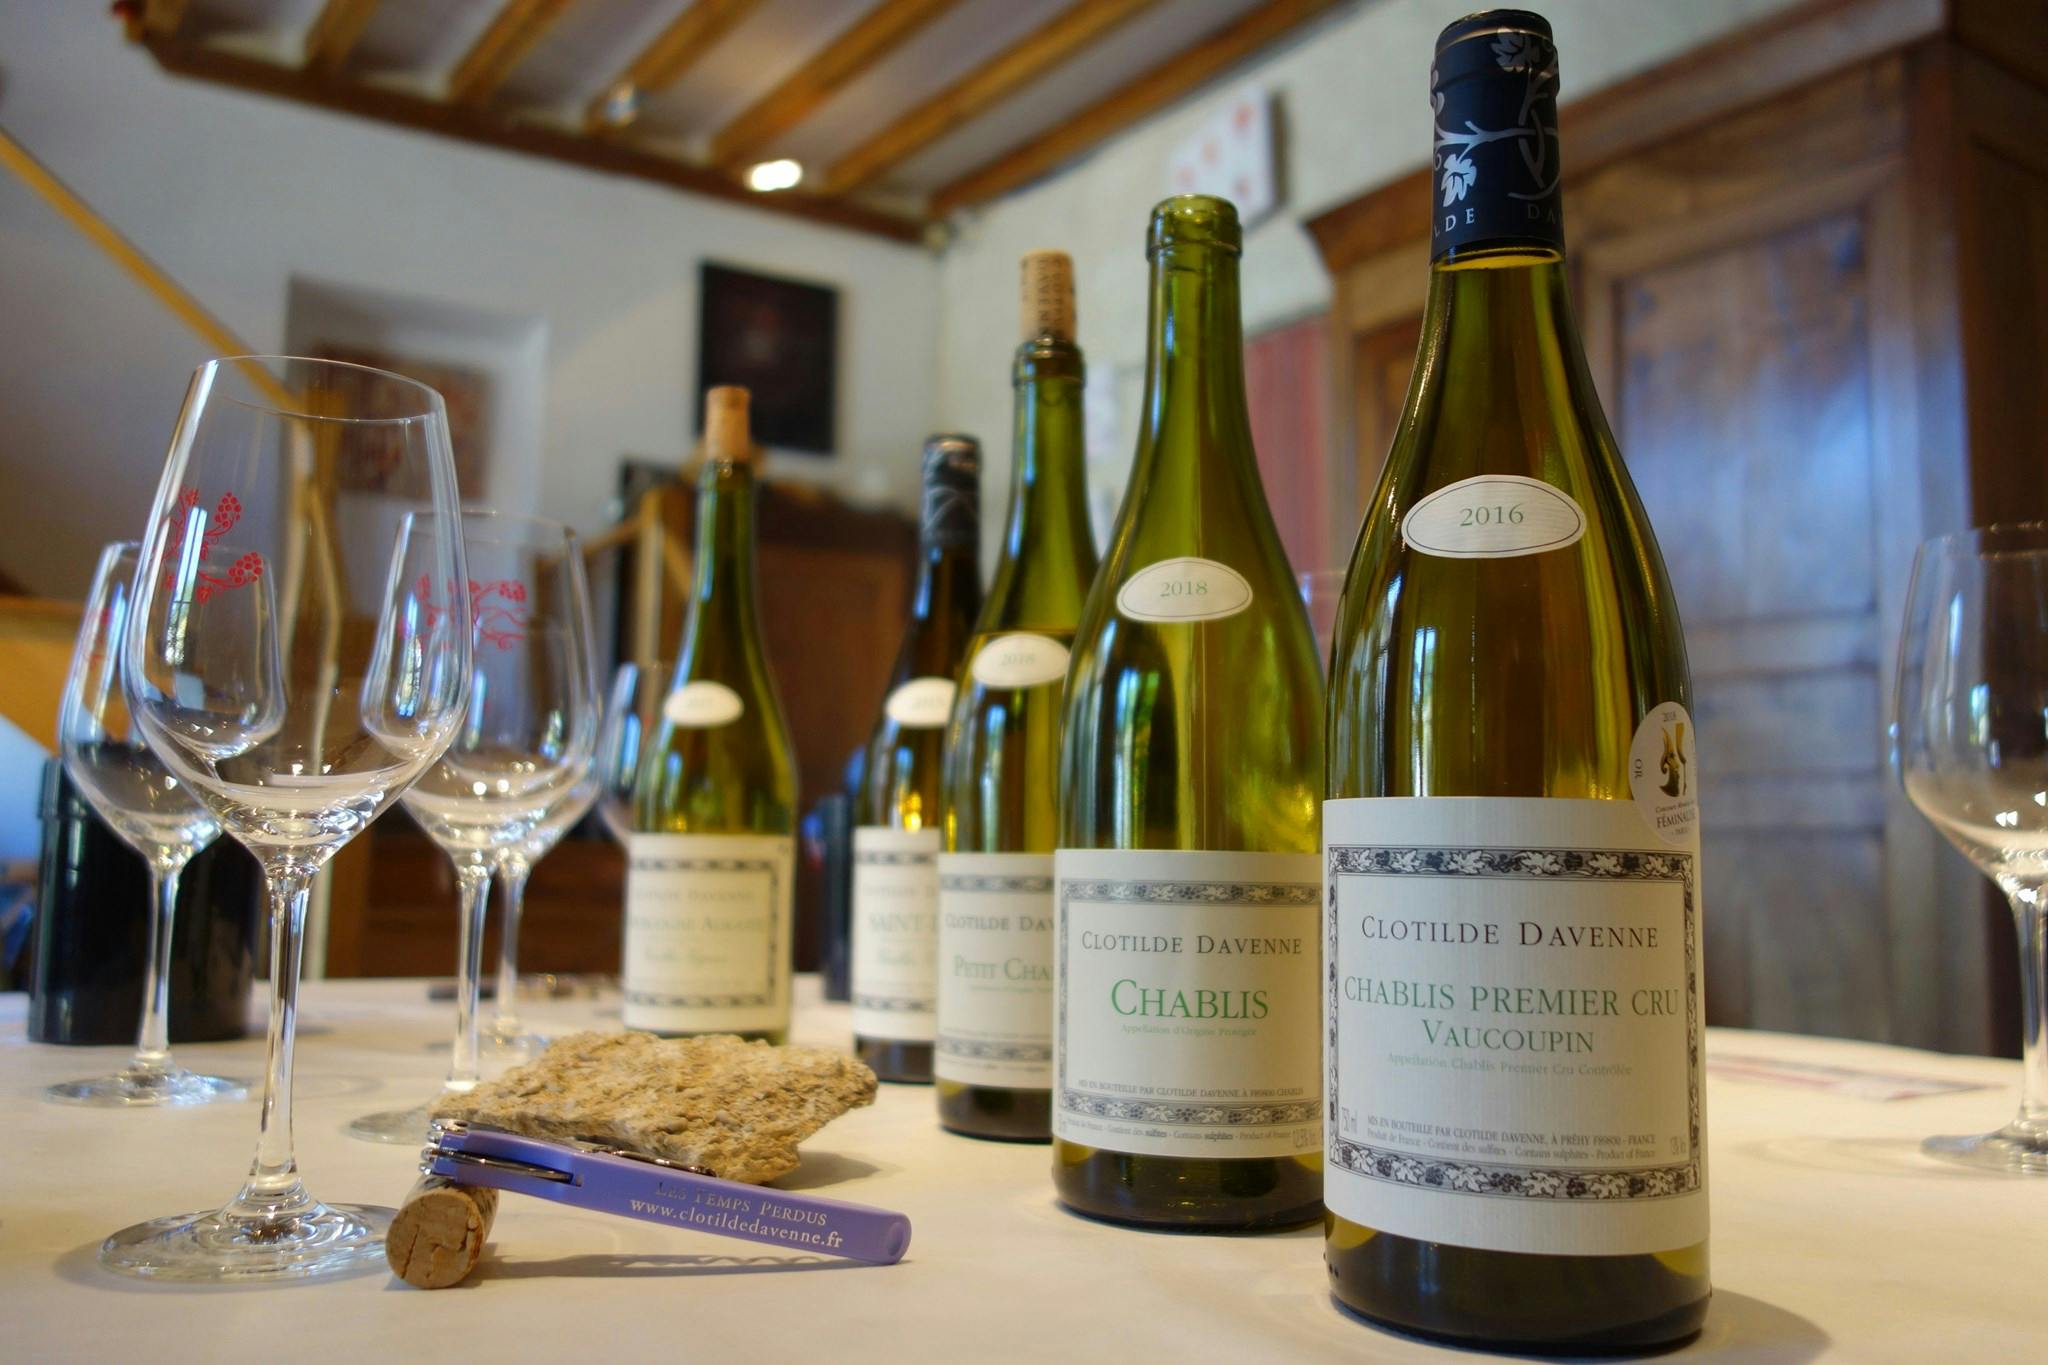 Sessione di degustazione di vini Chablis presso il Domaine Clotilde Davenne